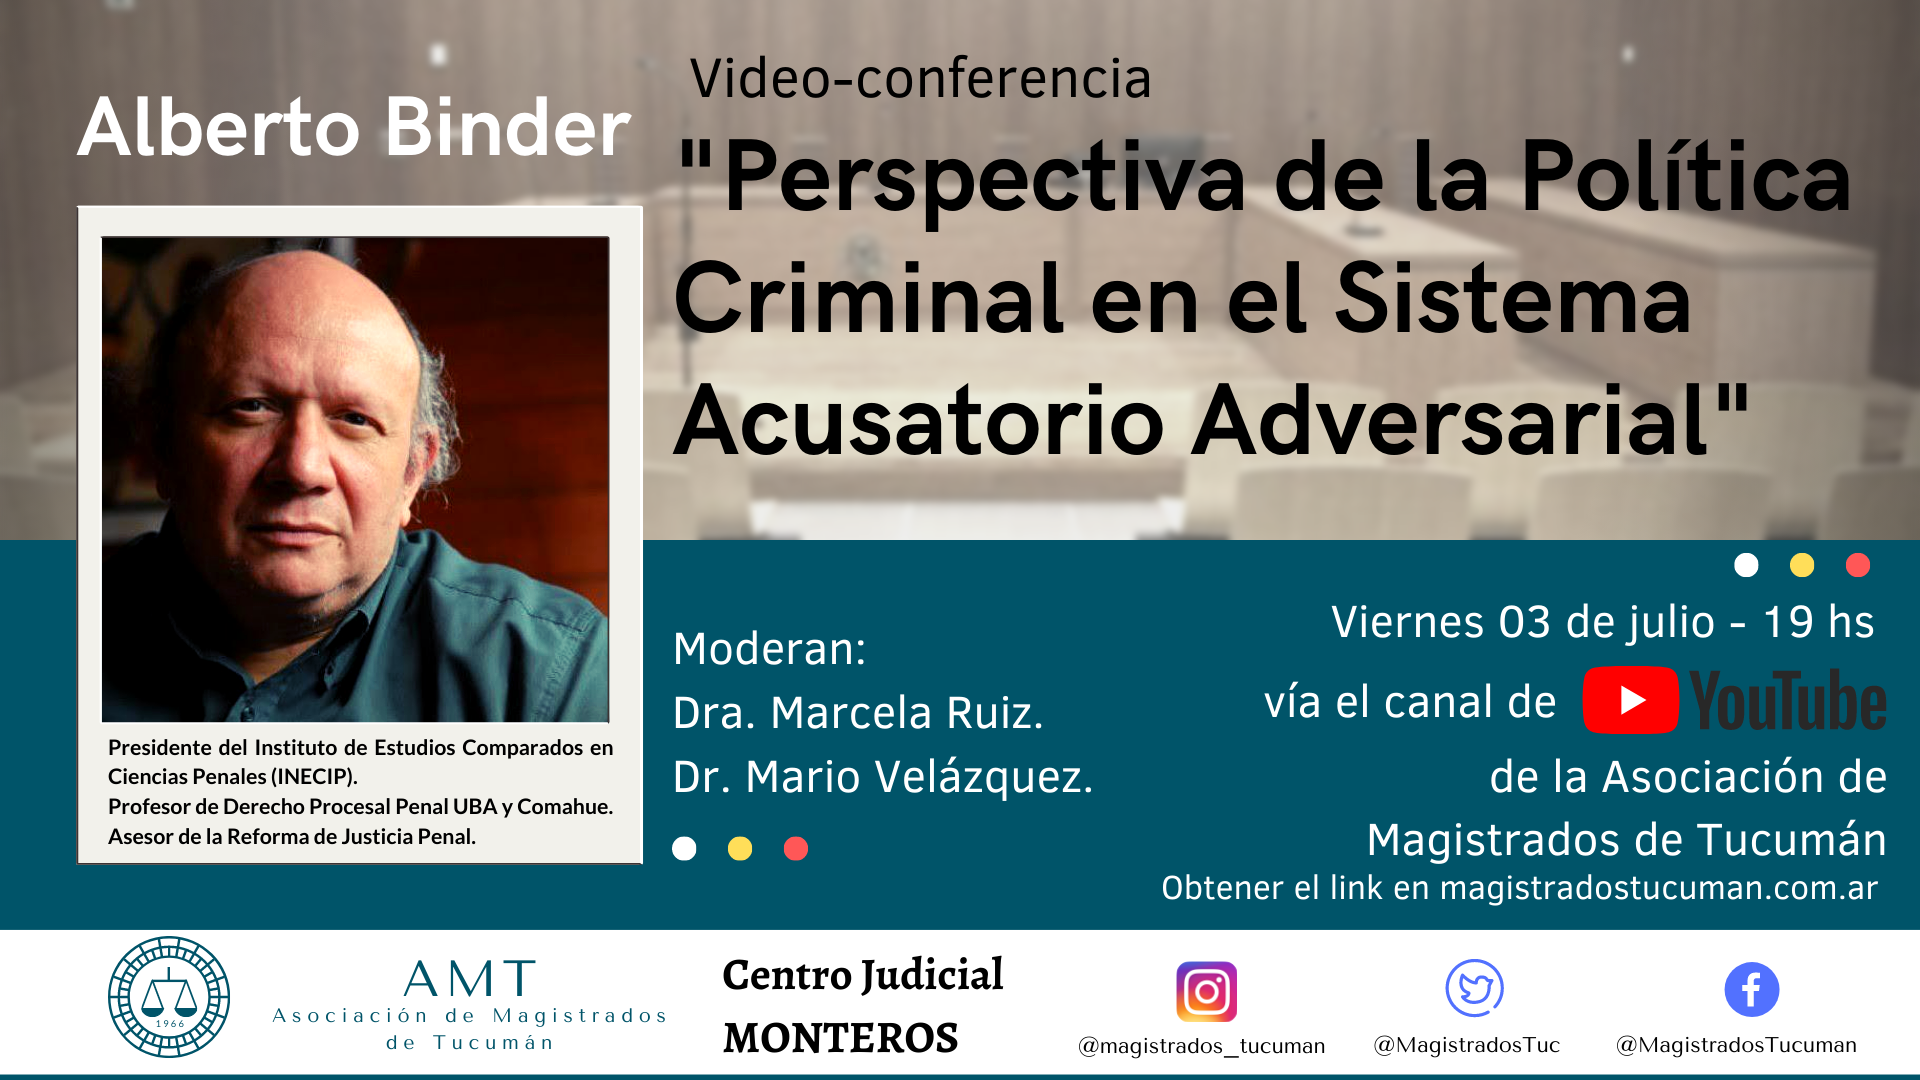 Vuelva a ver la conferencia de Alberto Binder «Perspectiva de la Política Criminal en el Sistema Acusatorio Adversarial»